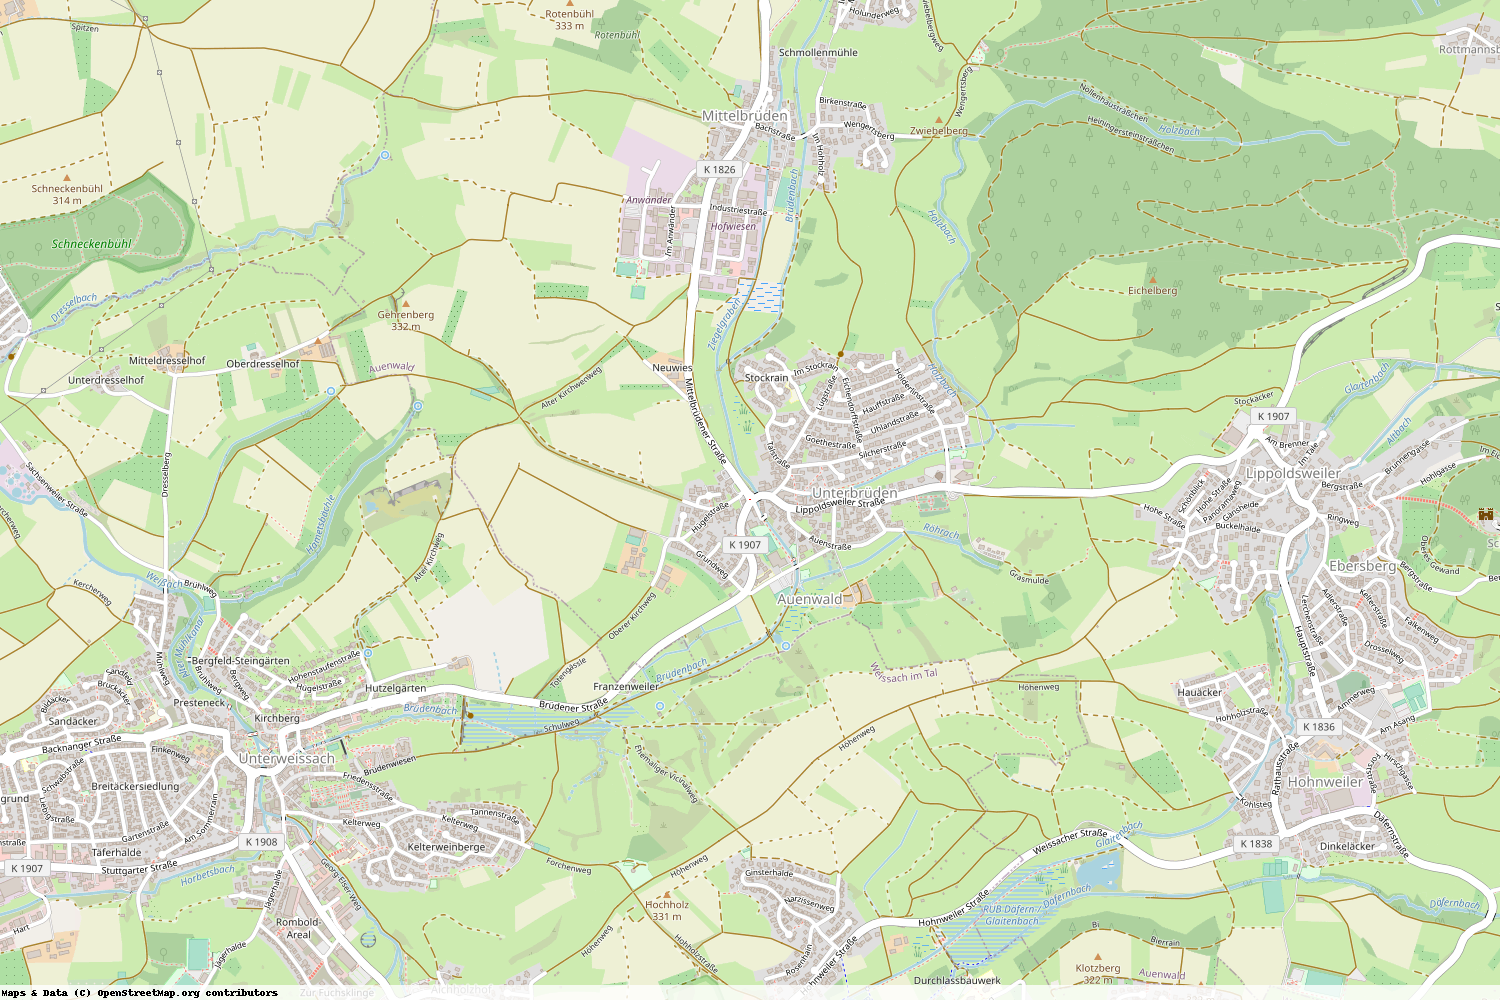 Ist gerade Stromausfall in Baden-Württemberg - Rems-Murr-Kreis - Auenwald?